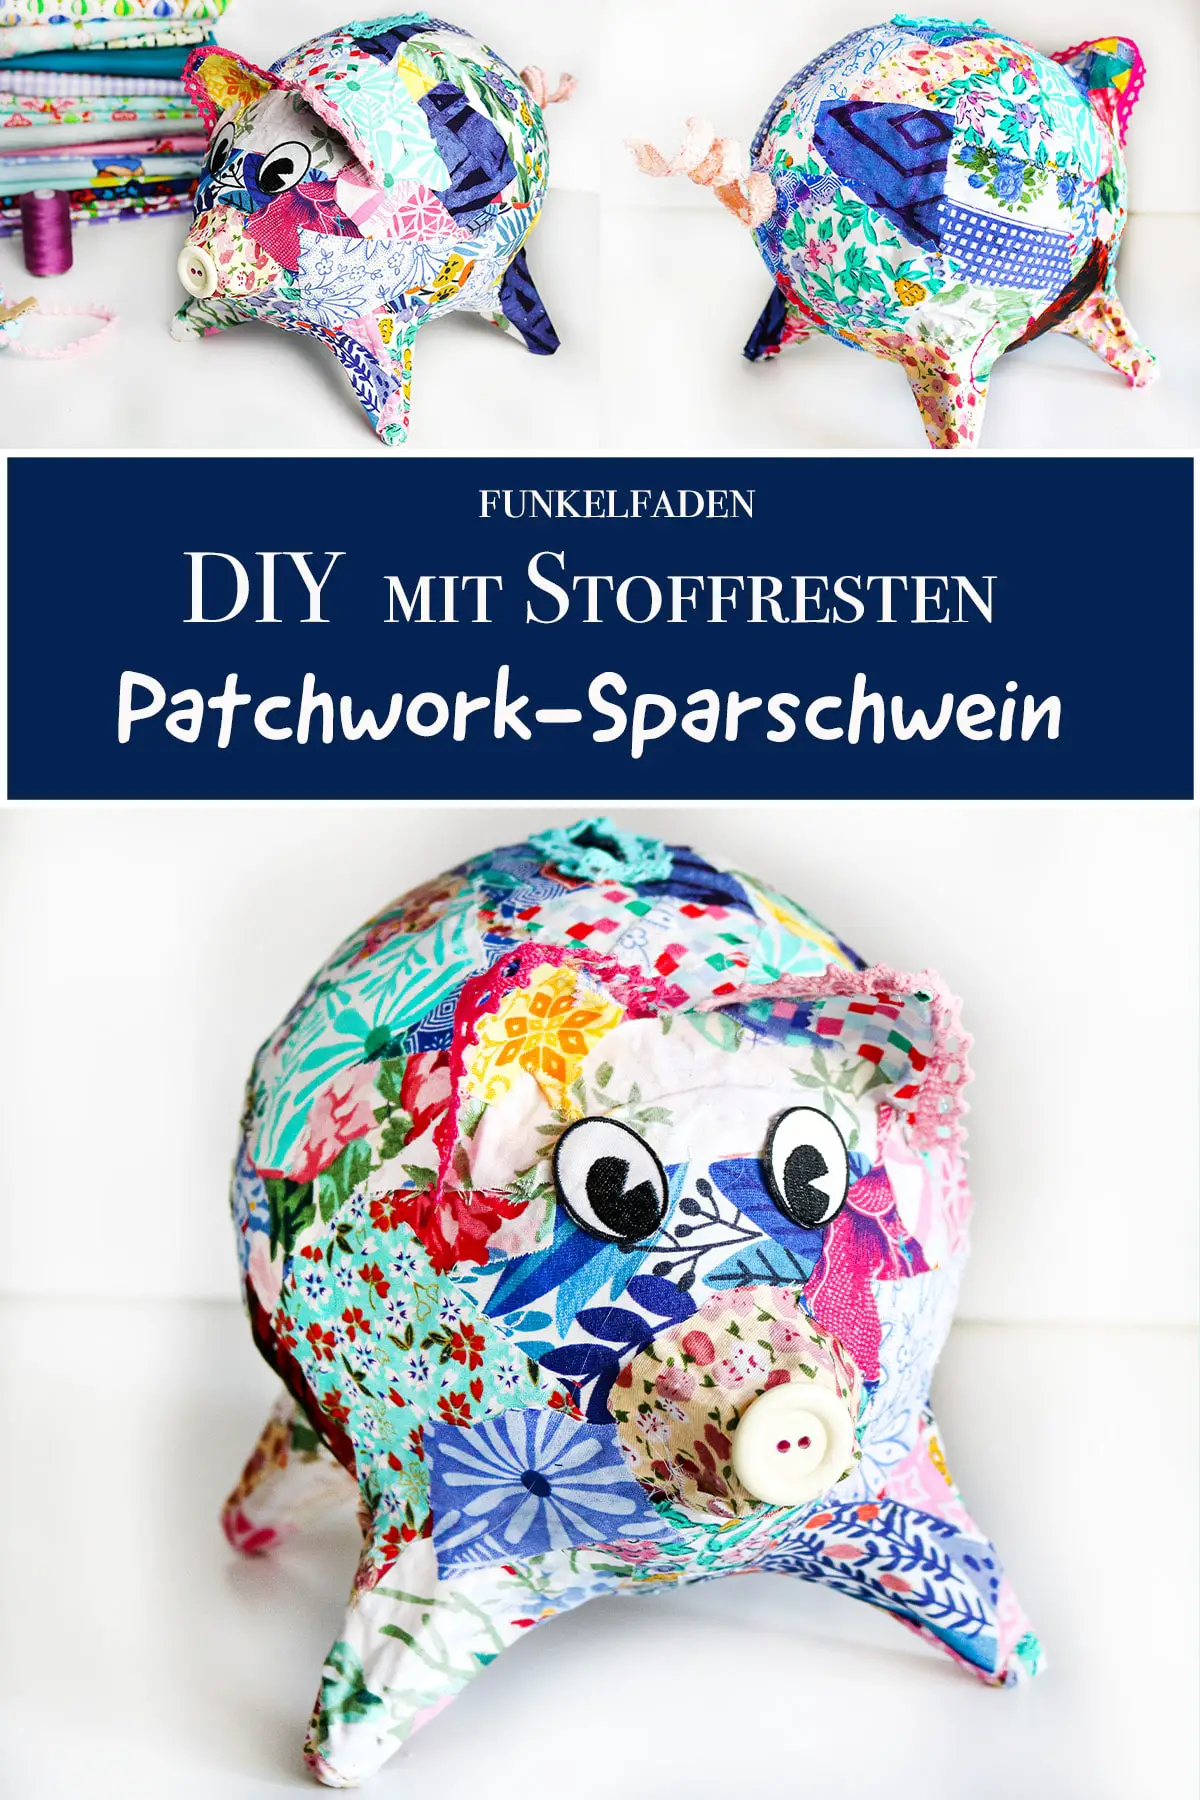 DIY – Patchwork-Sparschwein mit Stoffresten